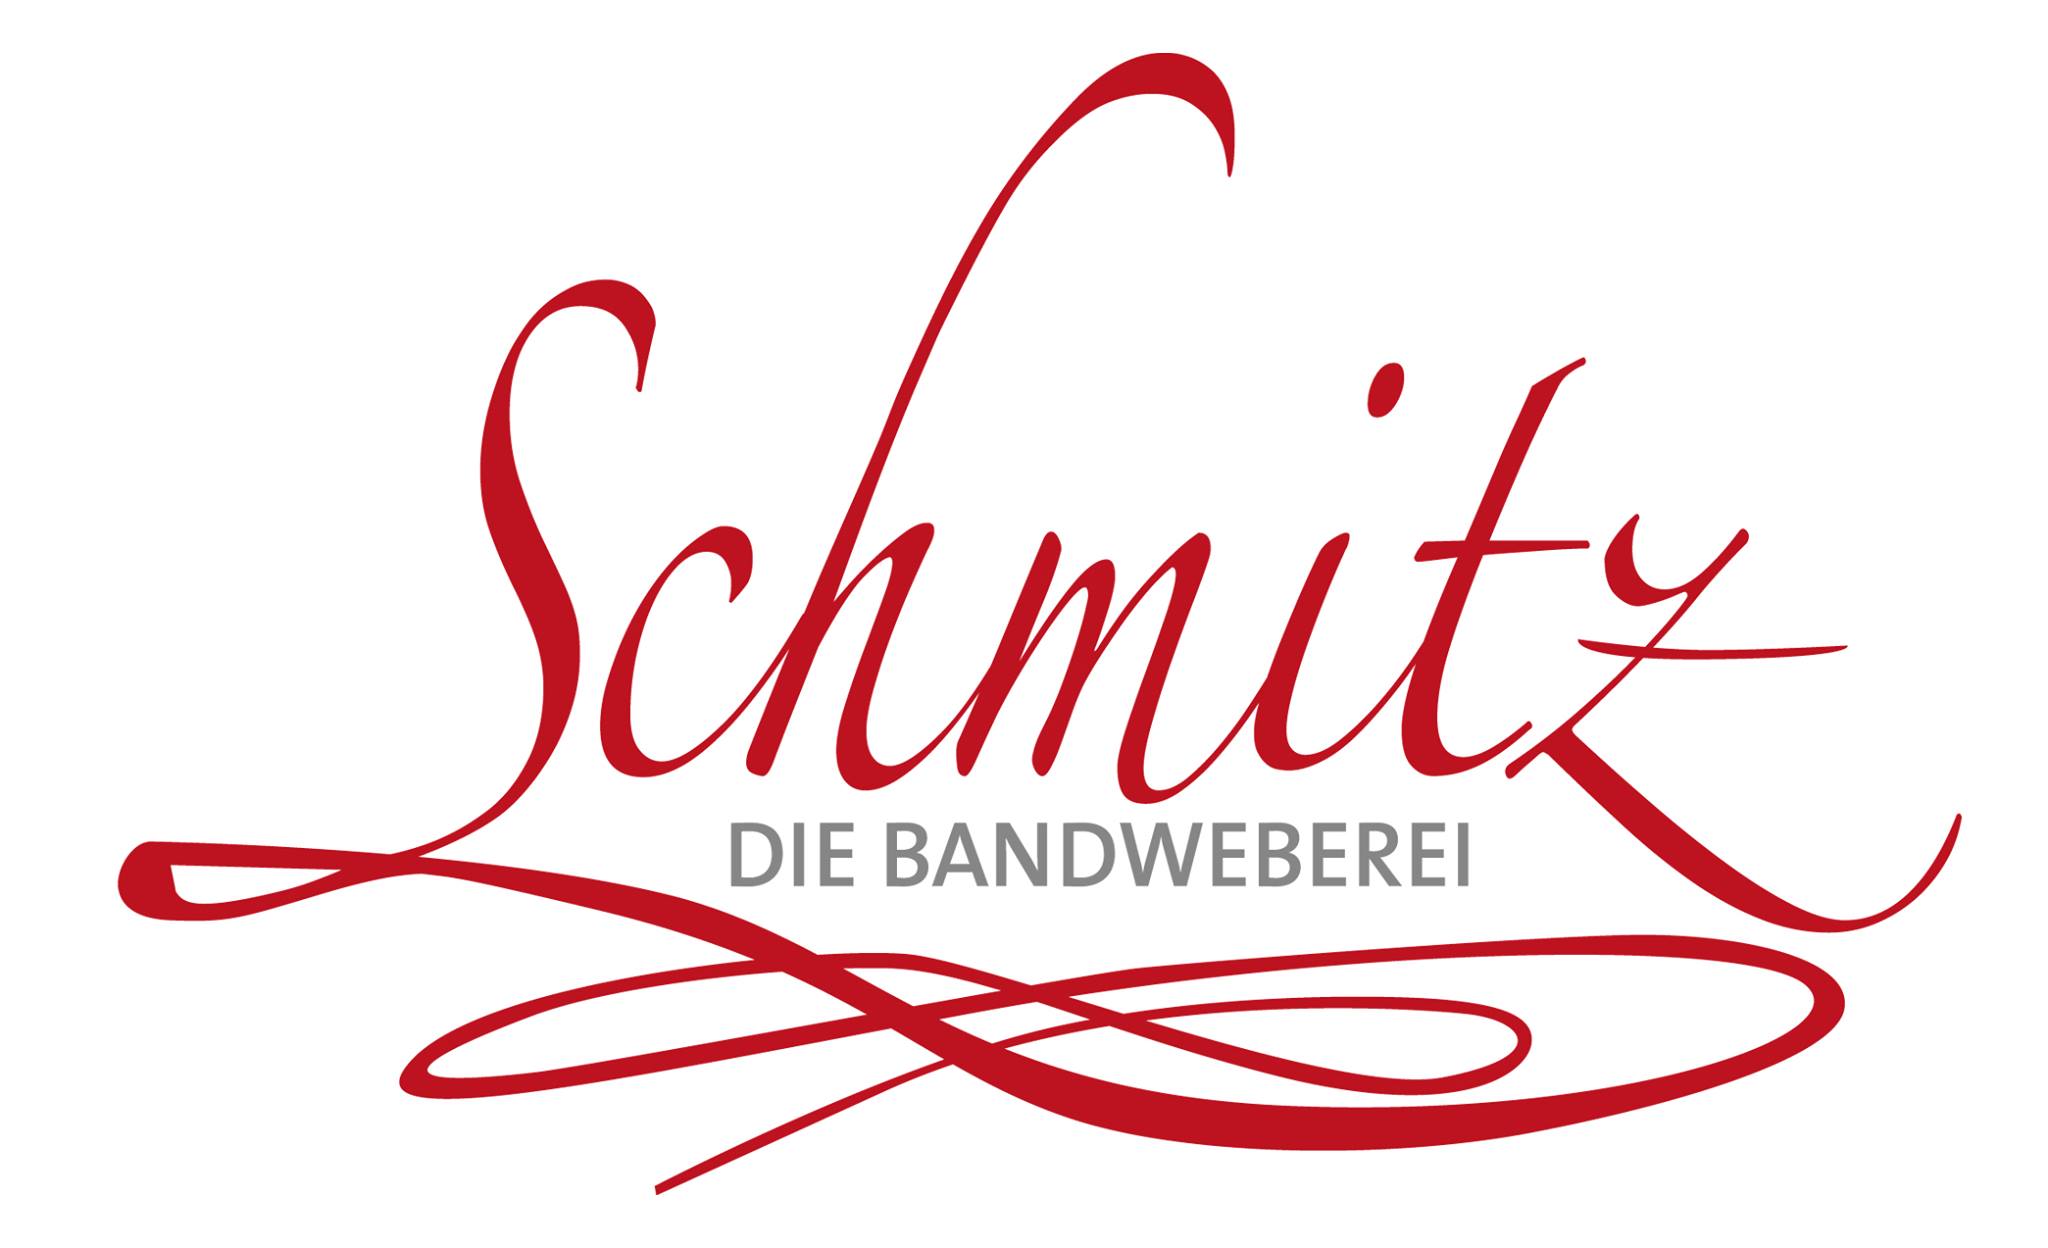 Bandweberei Schmitz in Wuppertal baut neue Produktionshalle mit Schreiber Stahlbau GmbH